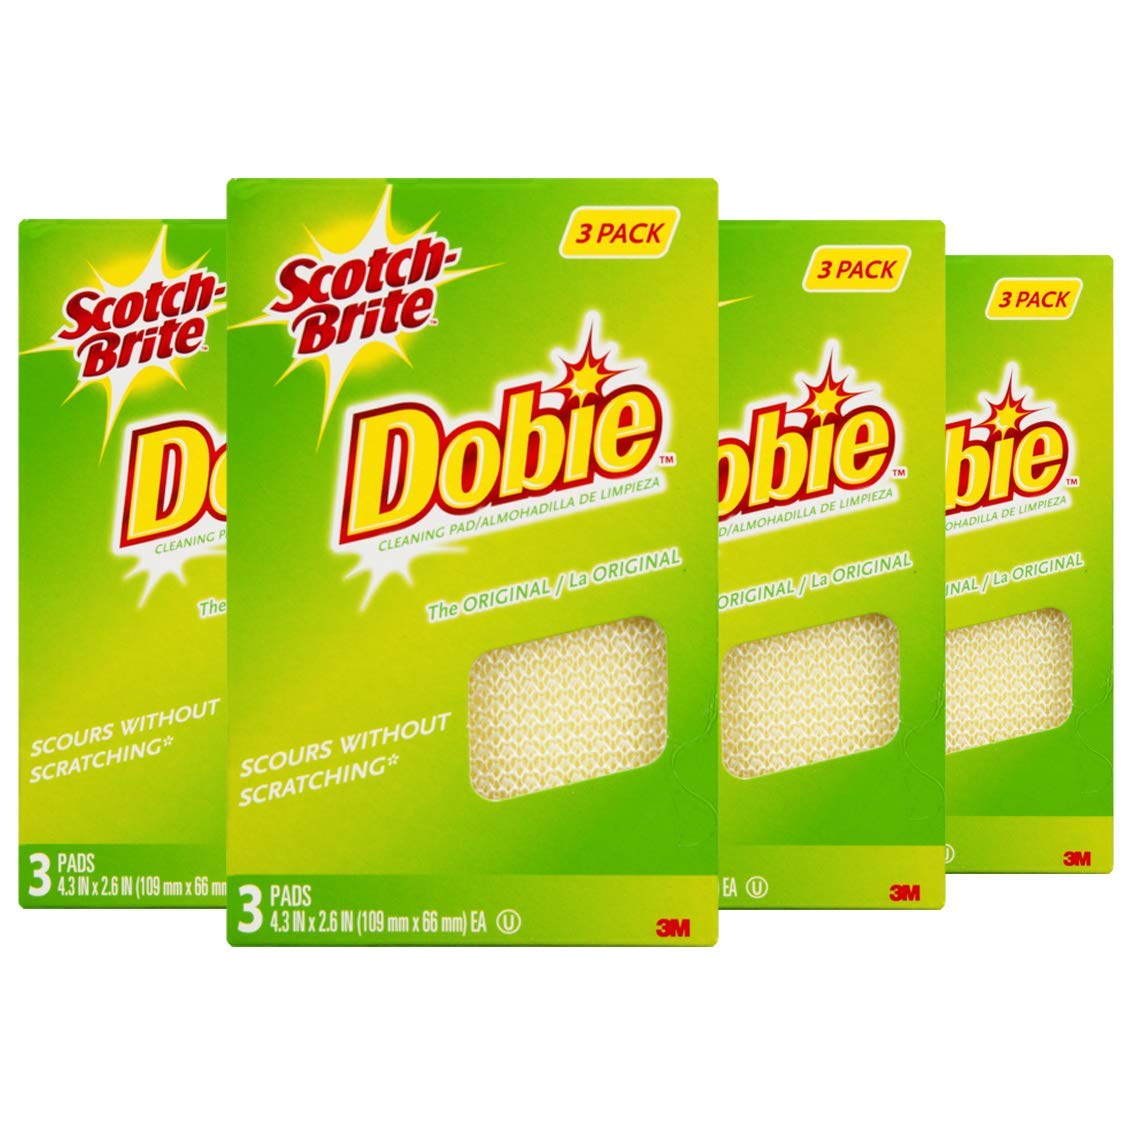 3M Scotch-Brite Dobie All Purpose Pads, 3Count (Pack of 4) Total 12 Pads